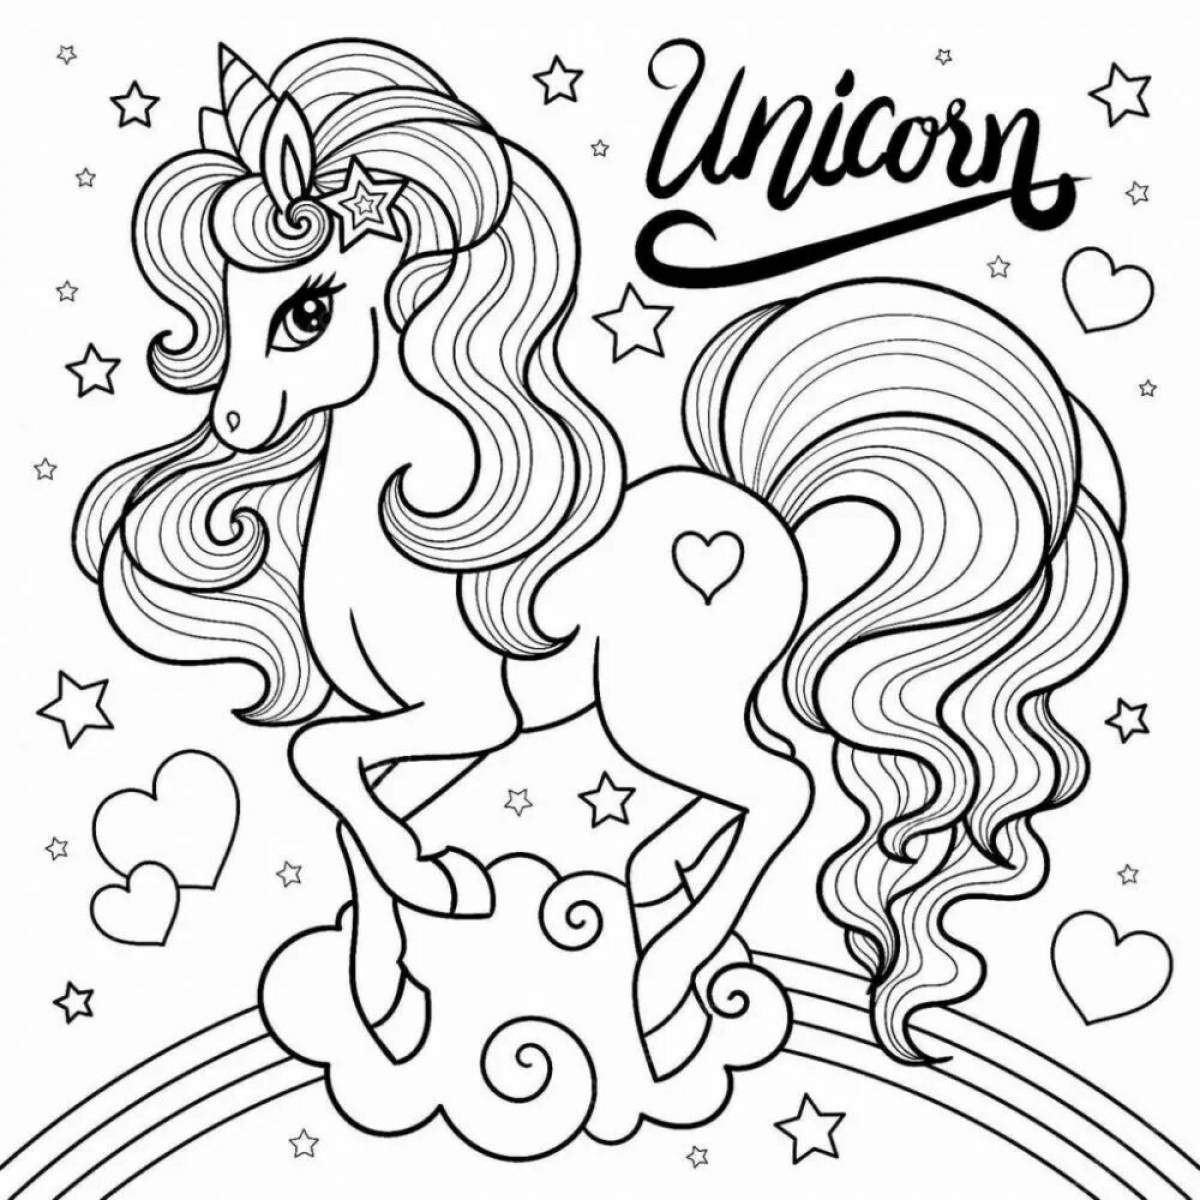 Turn on unicorns #6